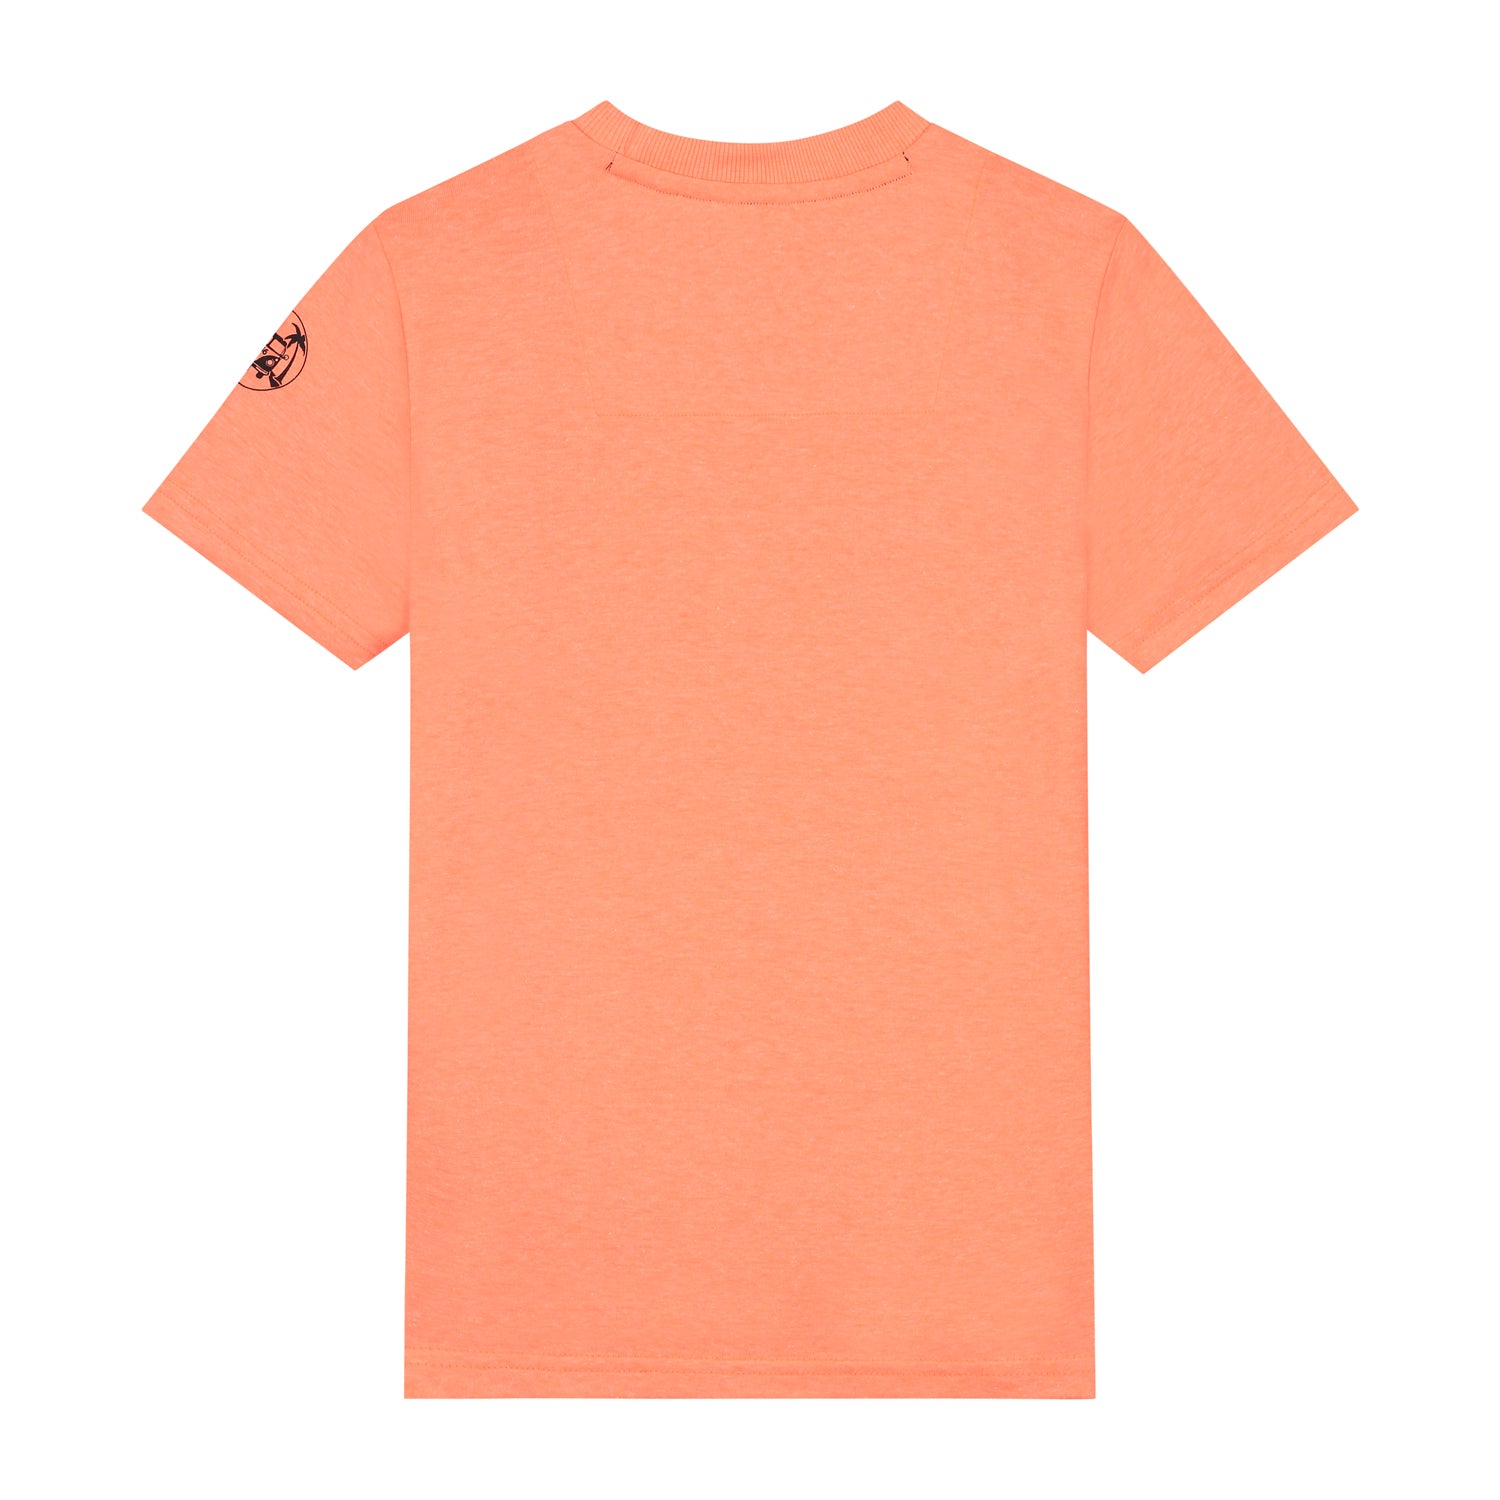 Skurk T-shirt Tos Coral